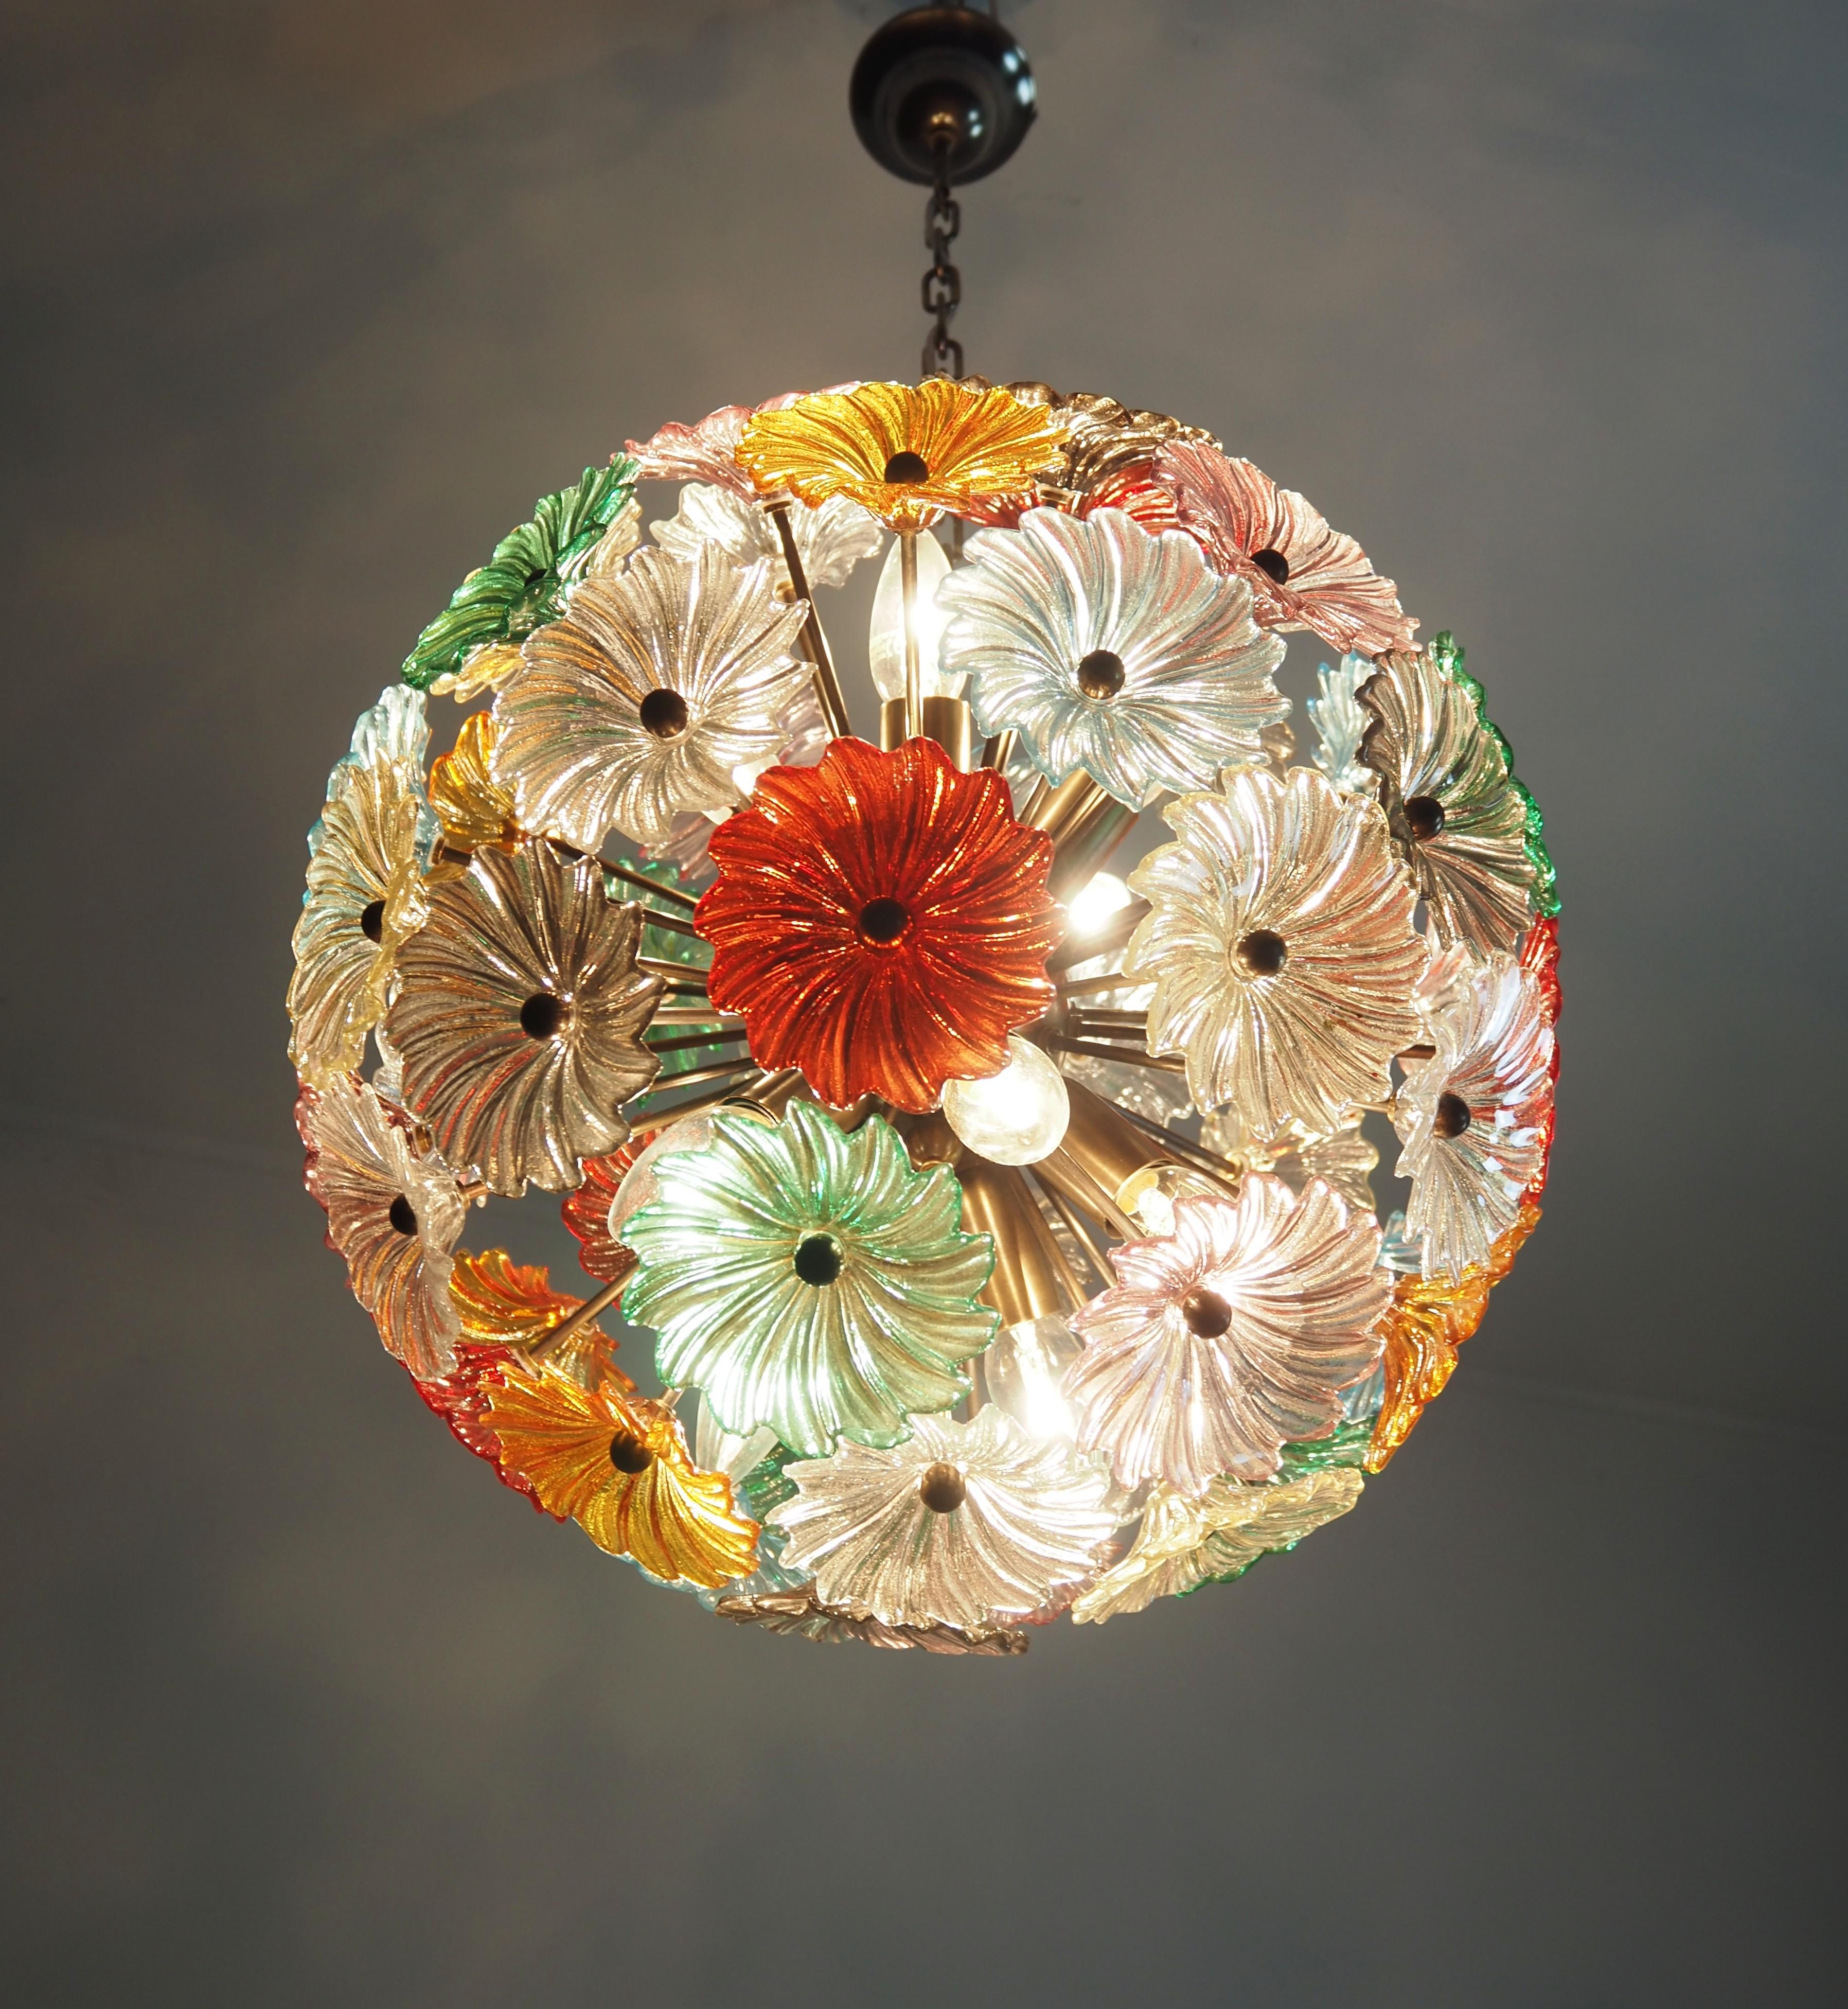 Paire de chandeliers Sputnik en cristal italien vintage de l'âge de l'espace, composés de 51 verres multicolores et montés sur une monture en métal bruni. Objet d'éclairage Elegant.
Période : fin du XXe siècle
Dimensions : 39 pouces (100 cm) de